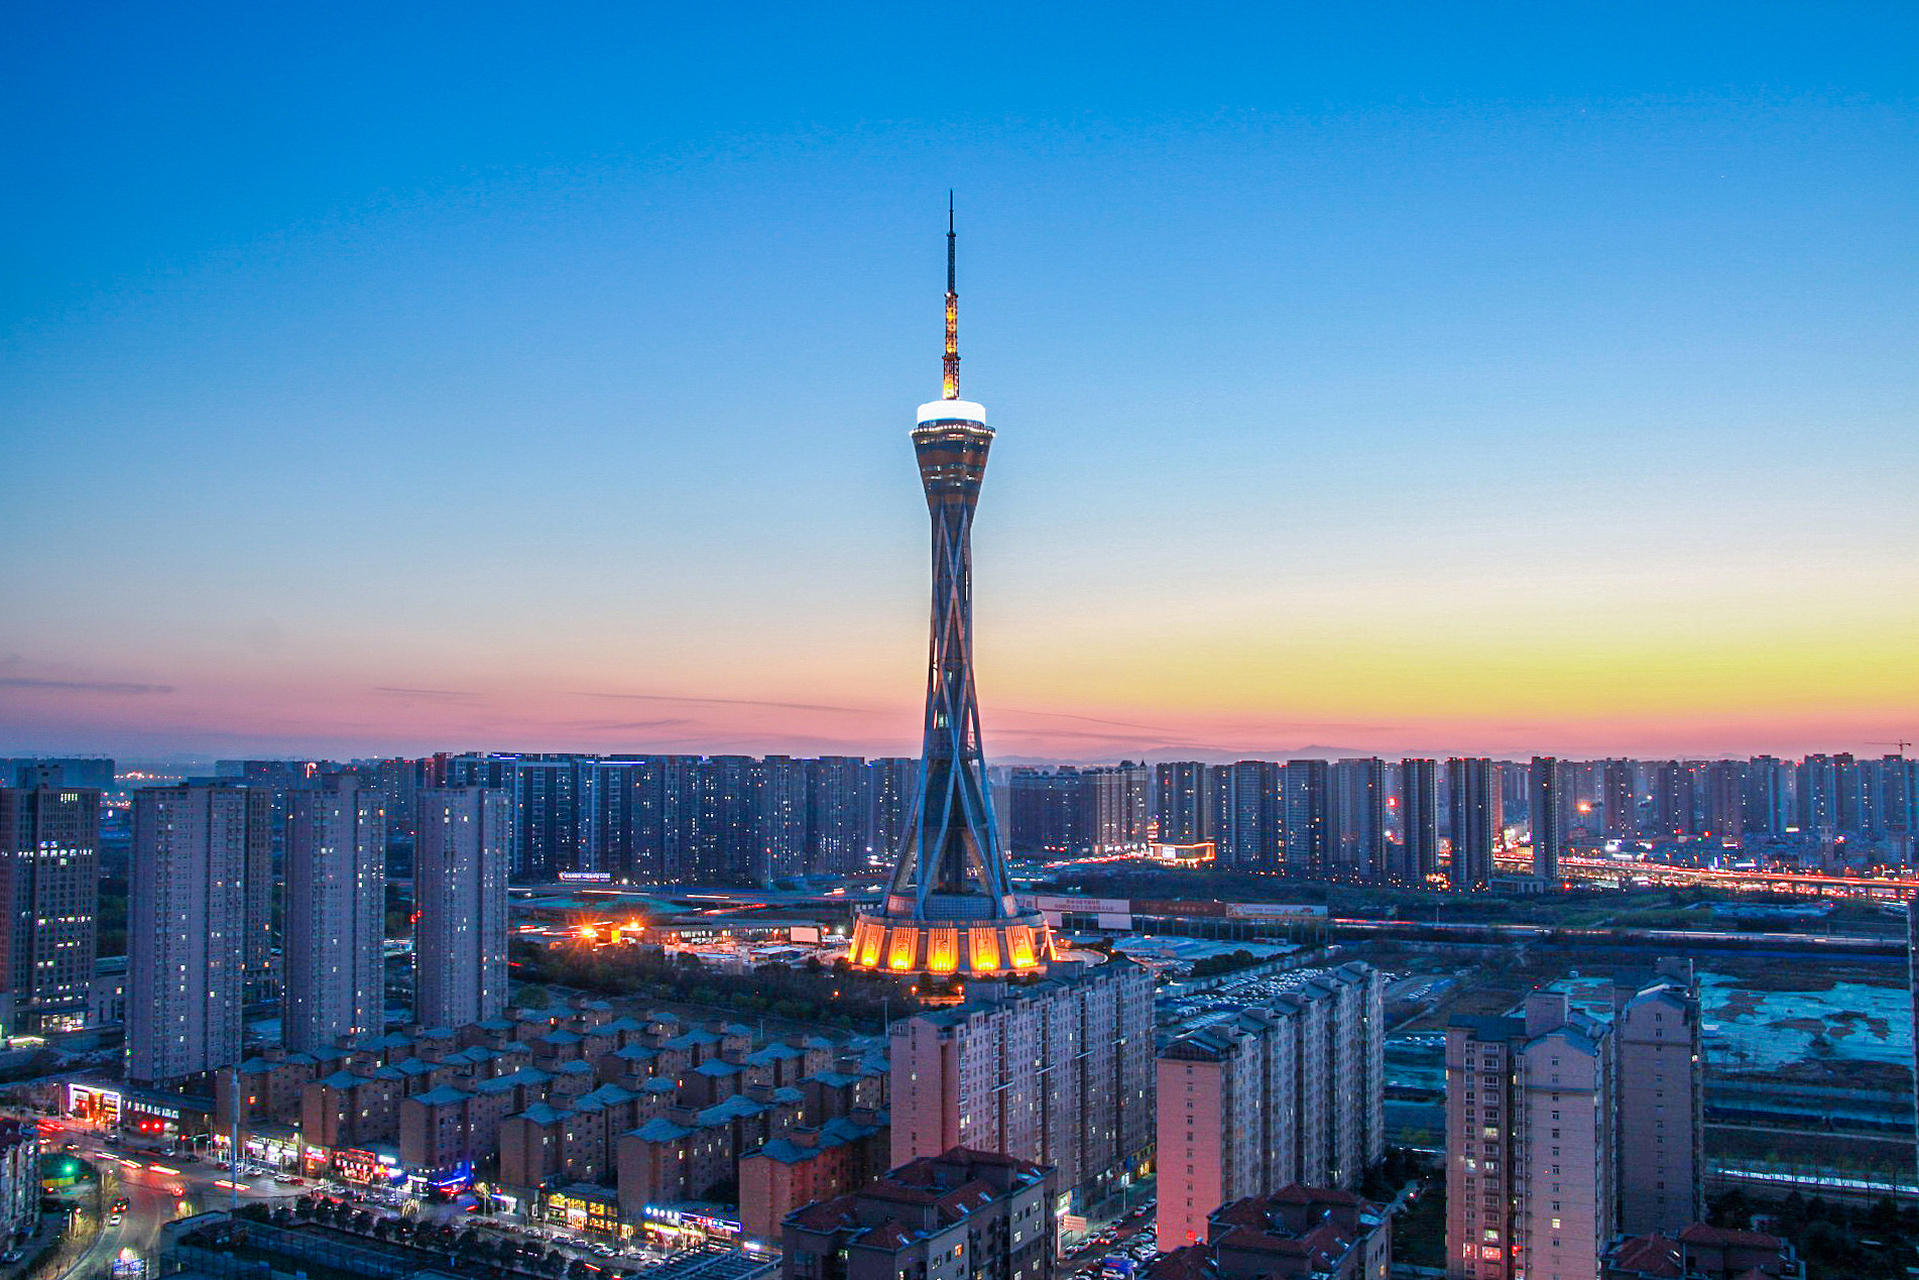 郑州中原福塔是一个标志性的建筑,位于河南省郑州市管城回族区,高度